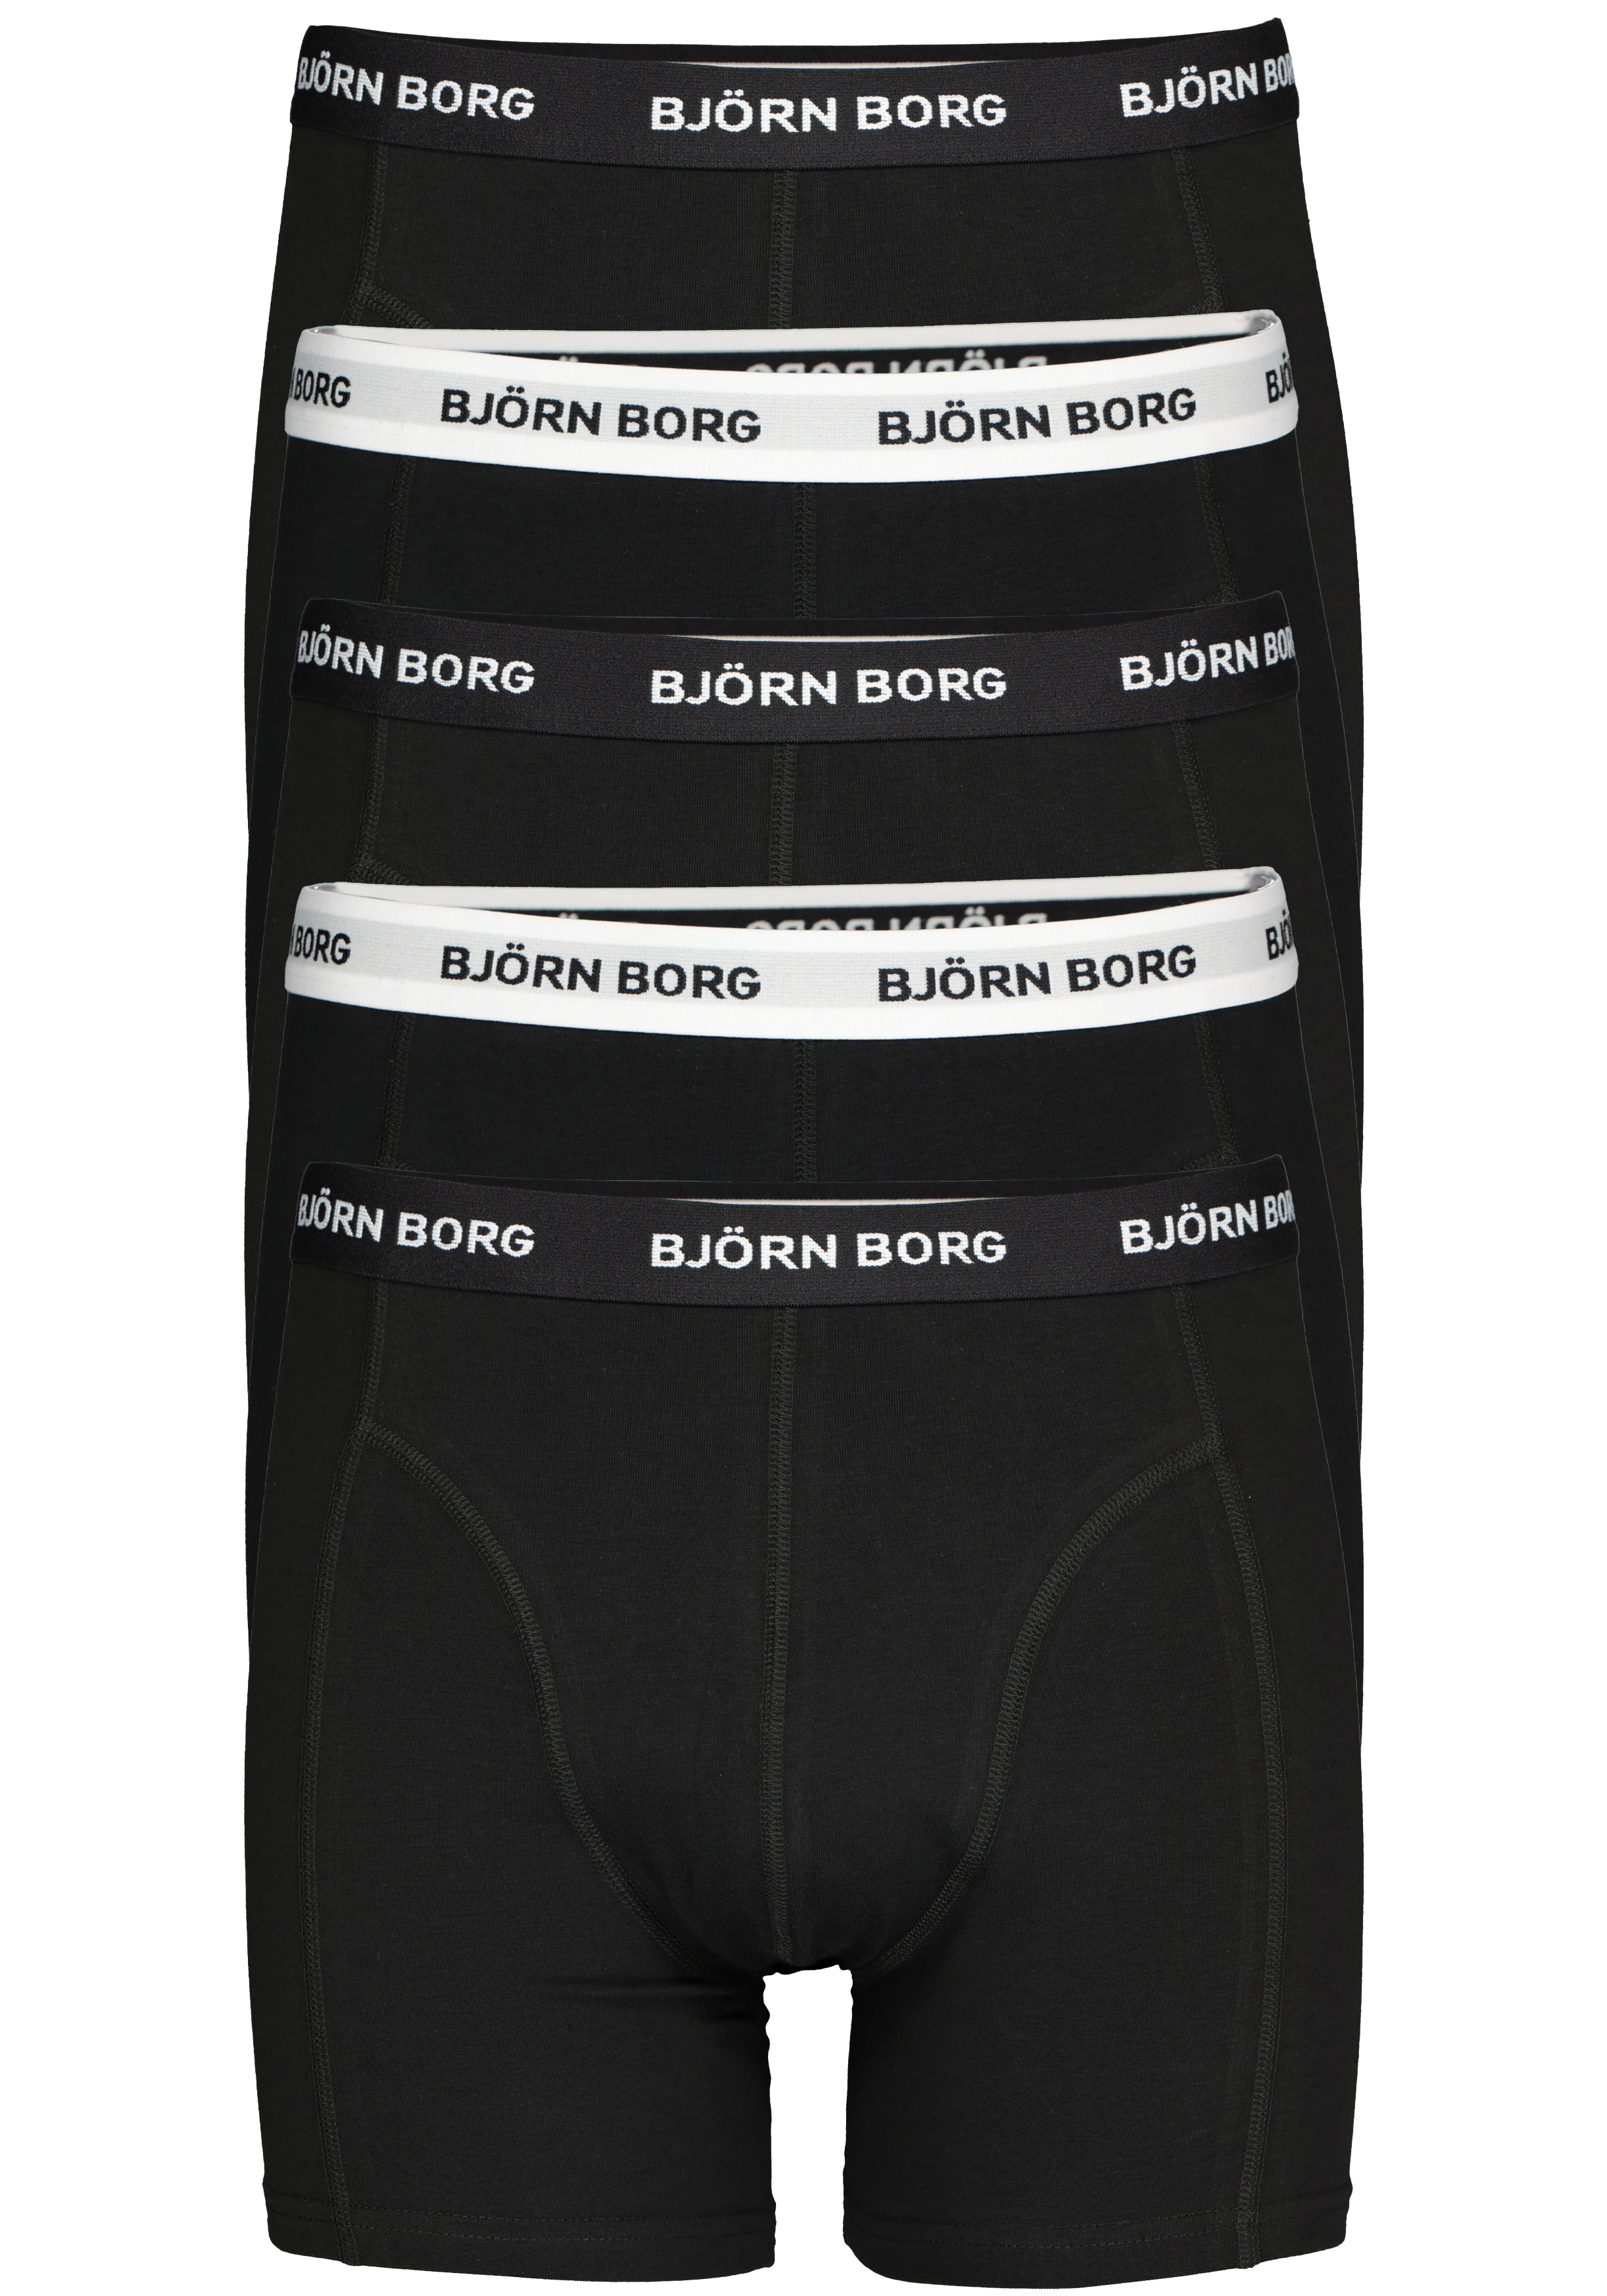 Borg boxershorts (5-pack), boxers normale lengte,... De eerste voorjaarscollecties zijn binnen